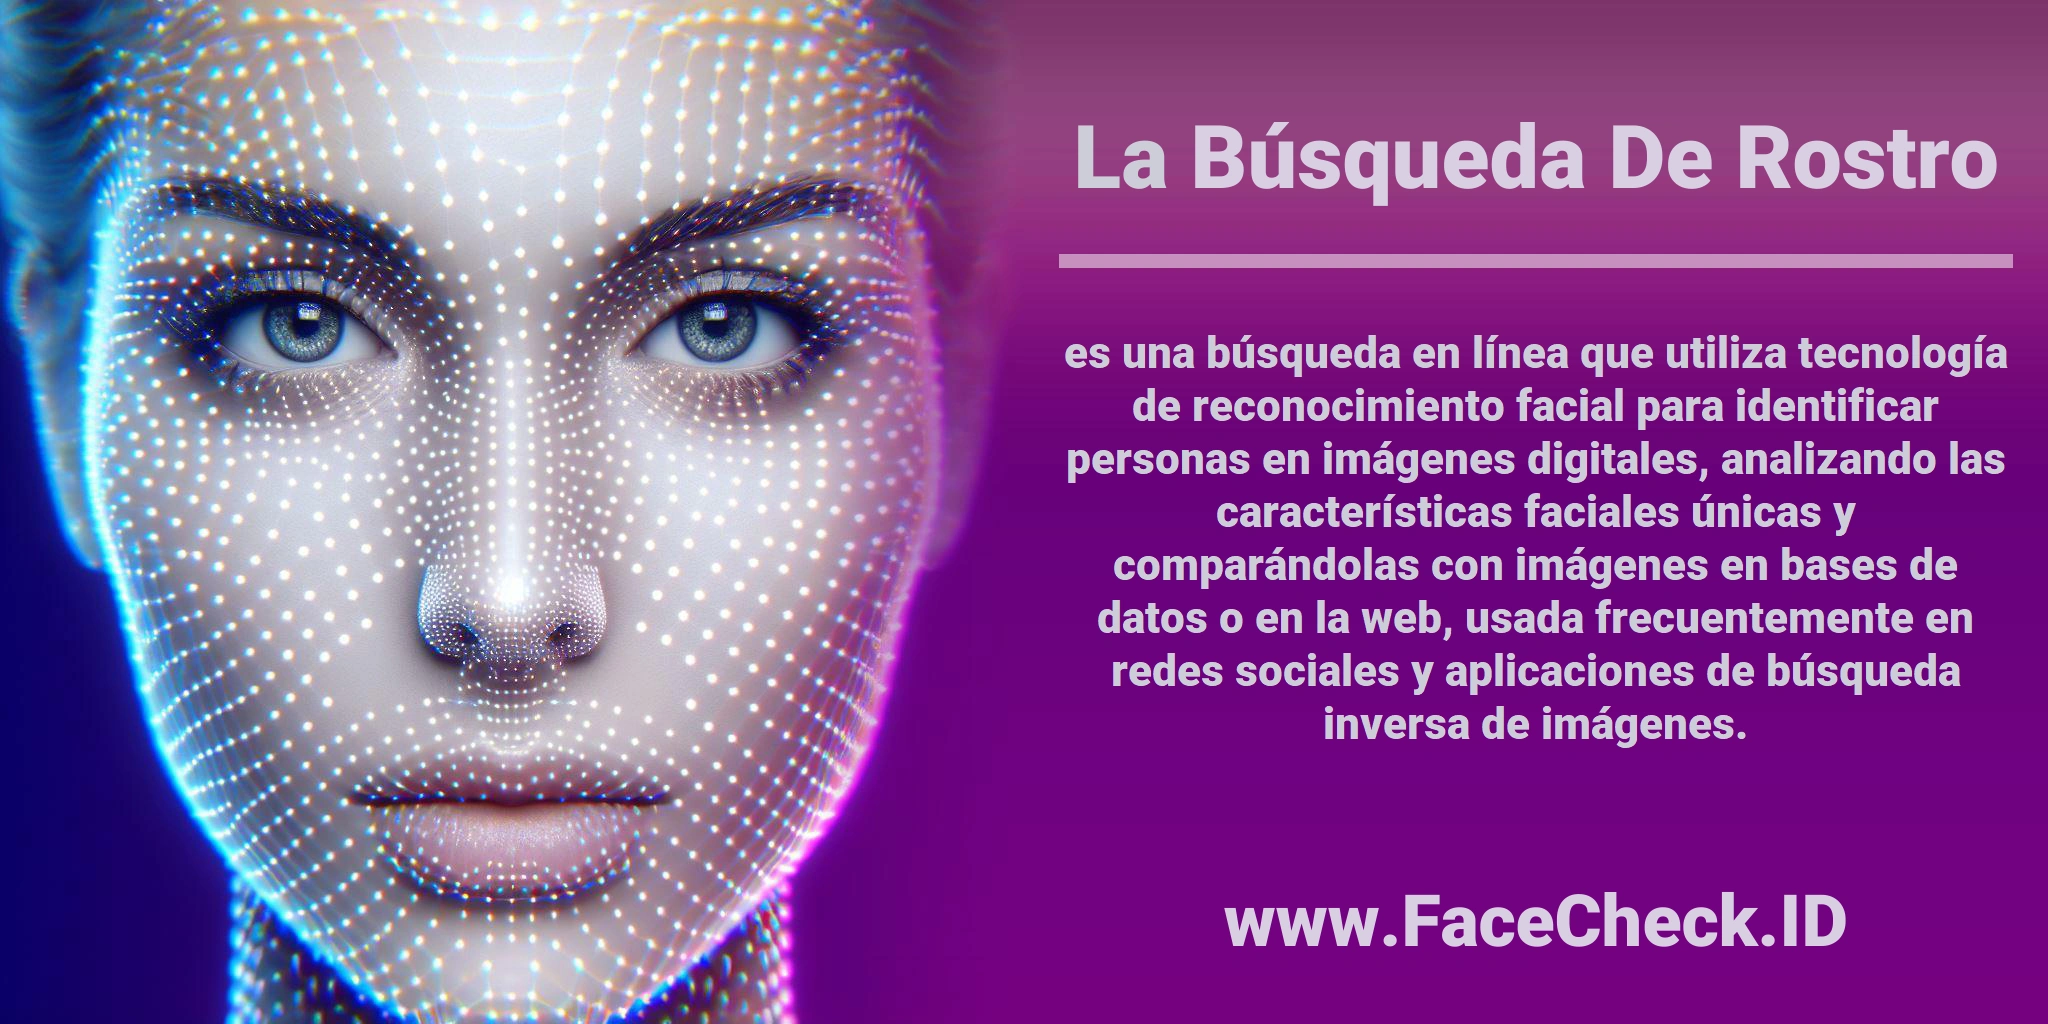 La <b>Búsqueda De Rostro</b> es una búsqueda en línea que utiliza tecnología de reconocimiento facial para identificar personas en imágenes digitales, analizando las características faciales únicas y comparándolas con imágenes en bases de datos o en la web, usada frecuentemente en redes sociales y aplicaciones de búsqueda inversa de imágenes.